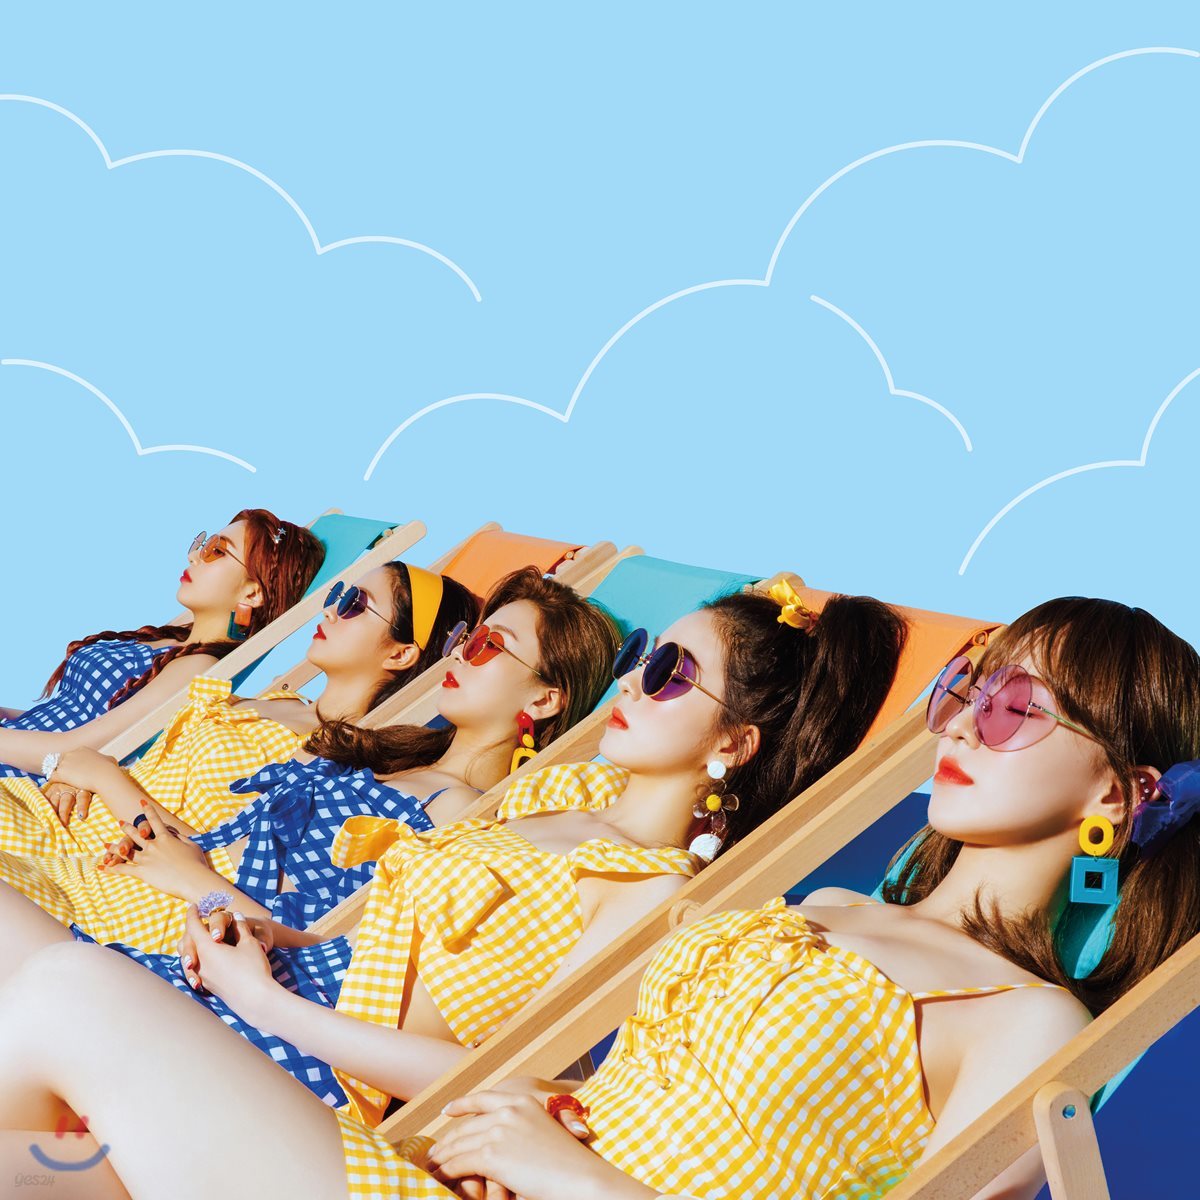 레드벨벳 (Red Velvet) - 여름 미니앨범 : Summer Magic [초회한정반][커버 5종 랜덤 발송]